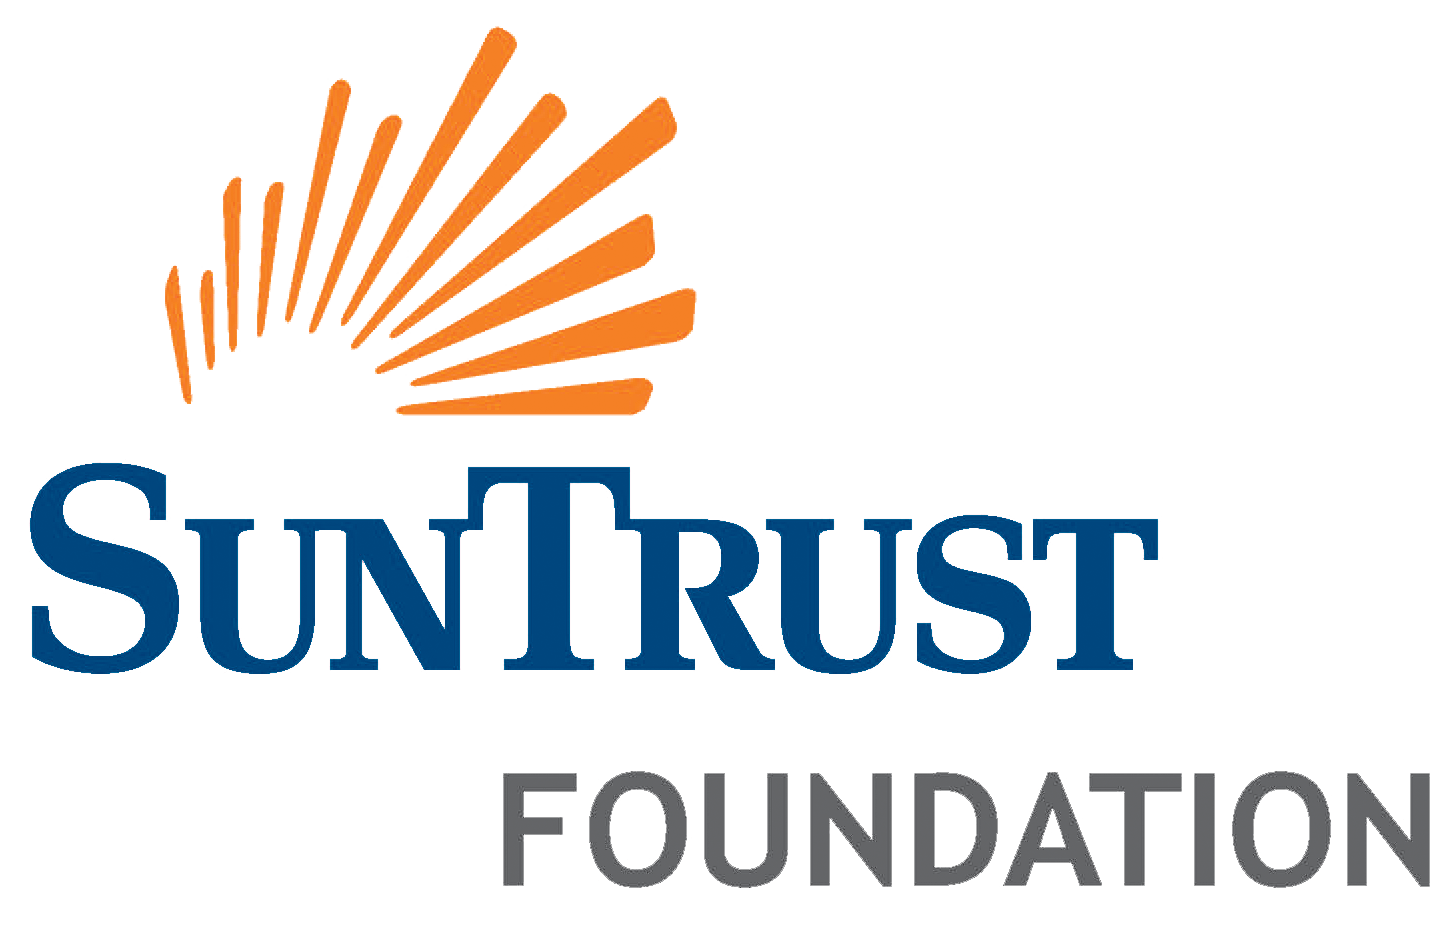 SunTrust-Foundation.png